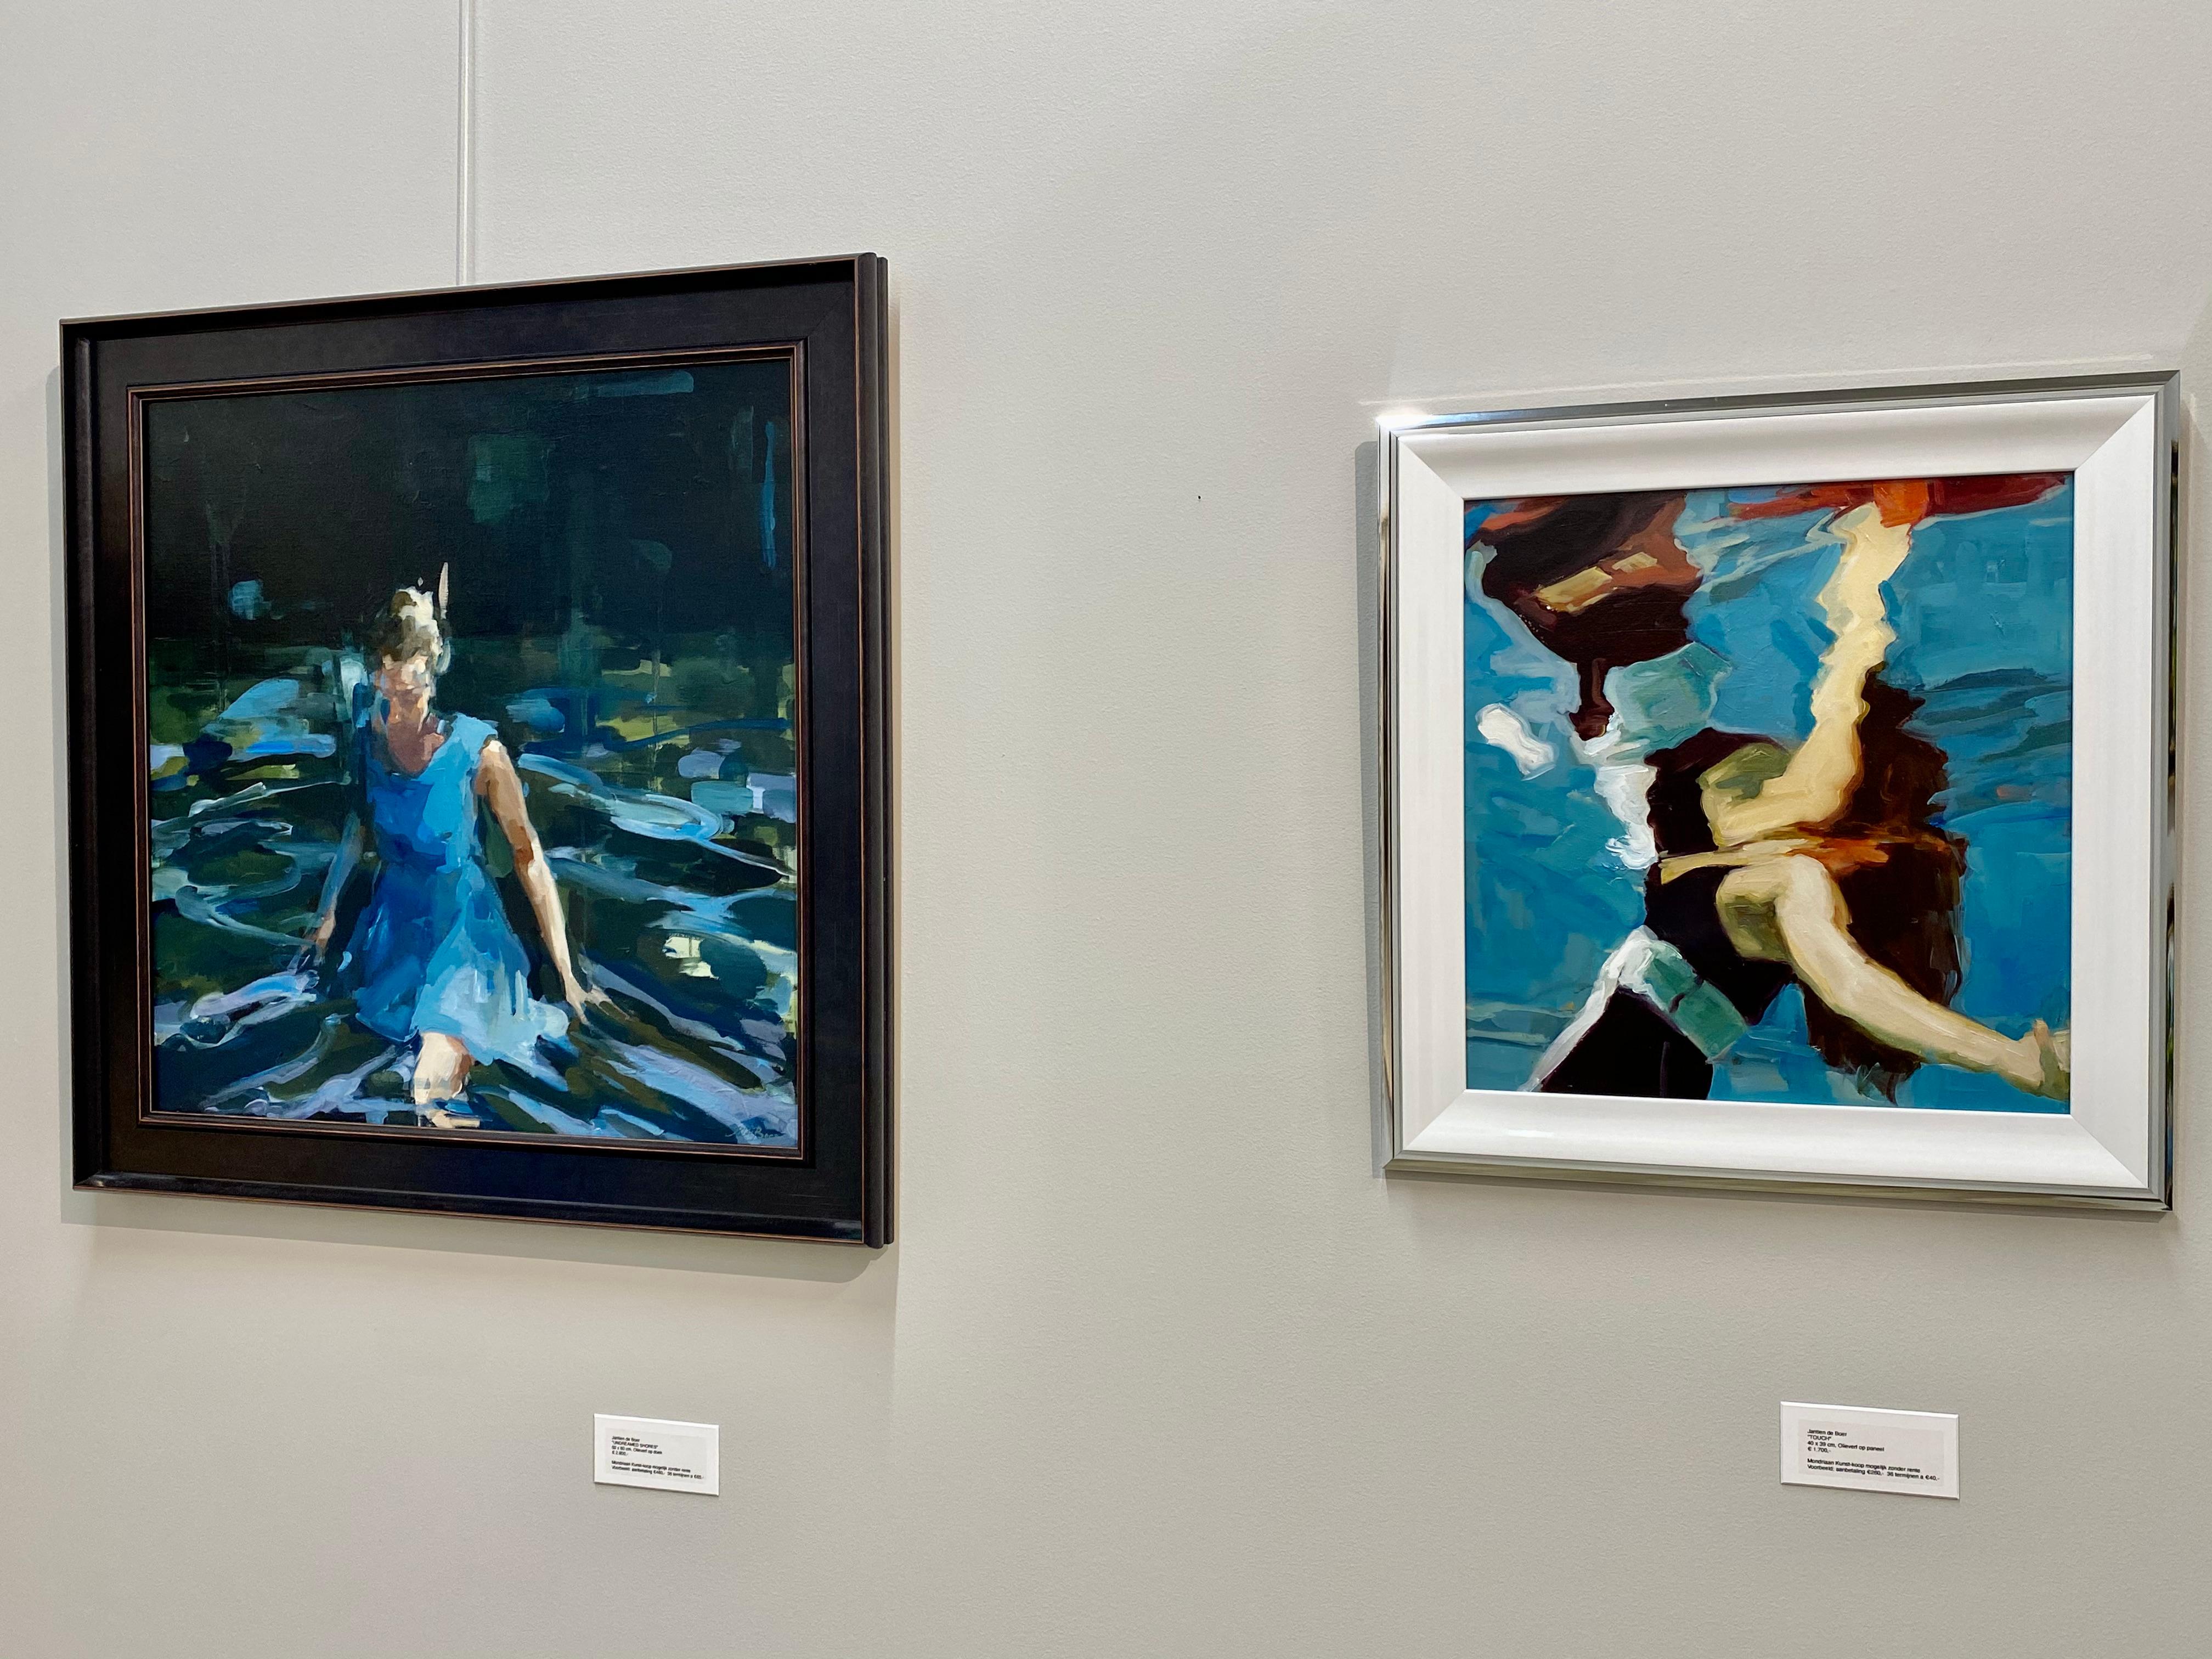 Touch - Peinture à l'huile du 21e siècle représentant une fille flottant et se reflétant  dans l'eau - Contemporain Painting par Jantien de Boer